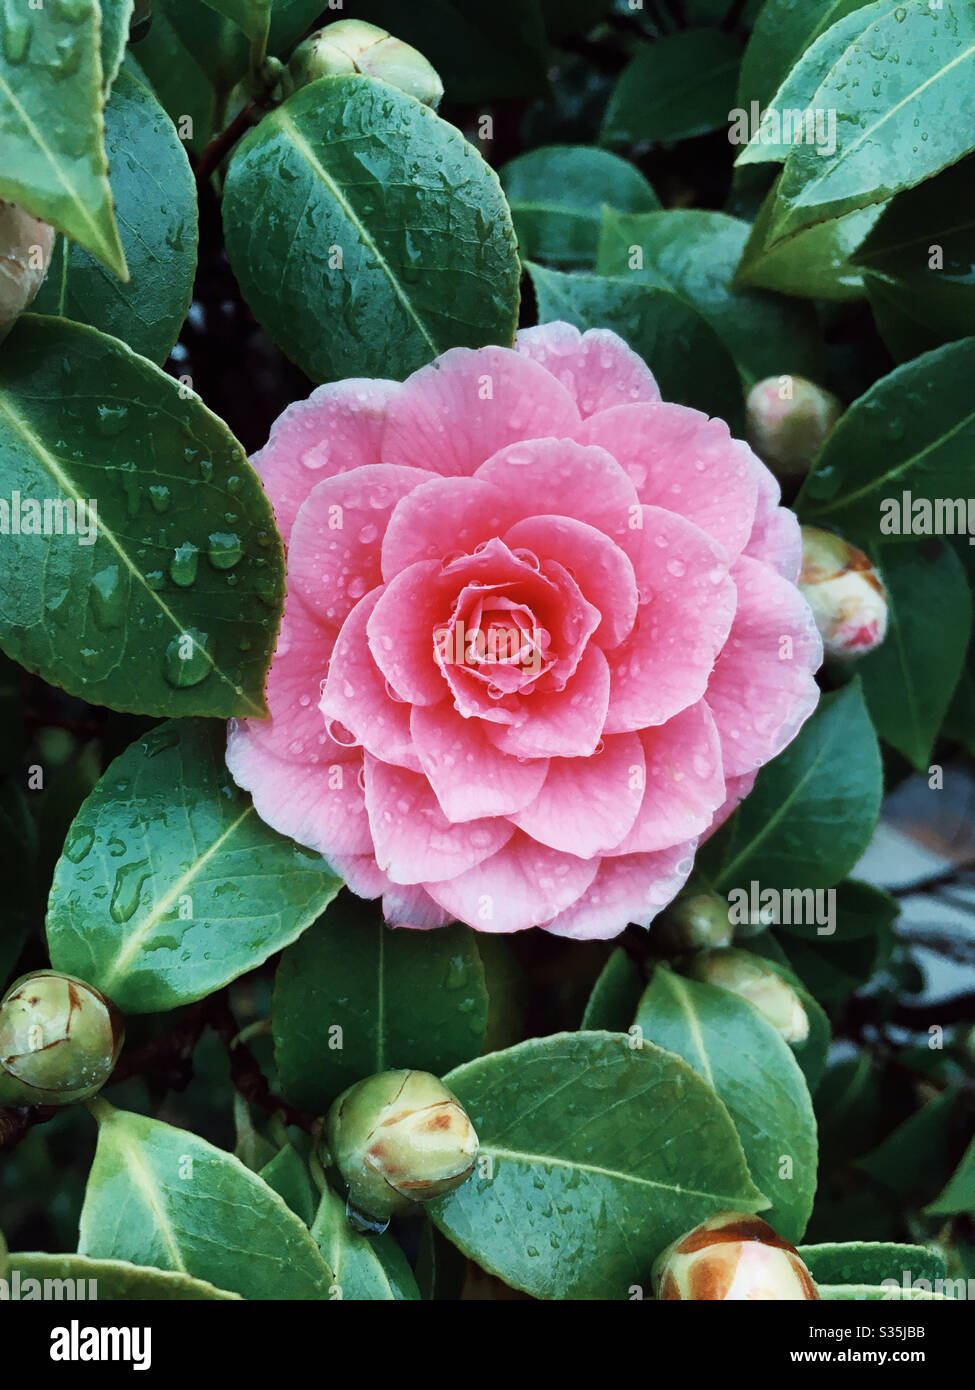 Camellia x williamsii ‘Waterlily’  Family: Theaceae Genus: Camellia  Plant type: Shrub Stock Photo